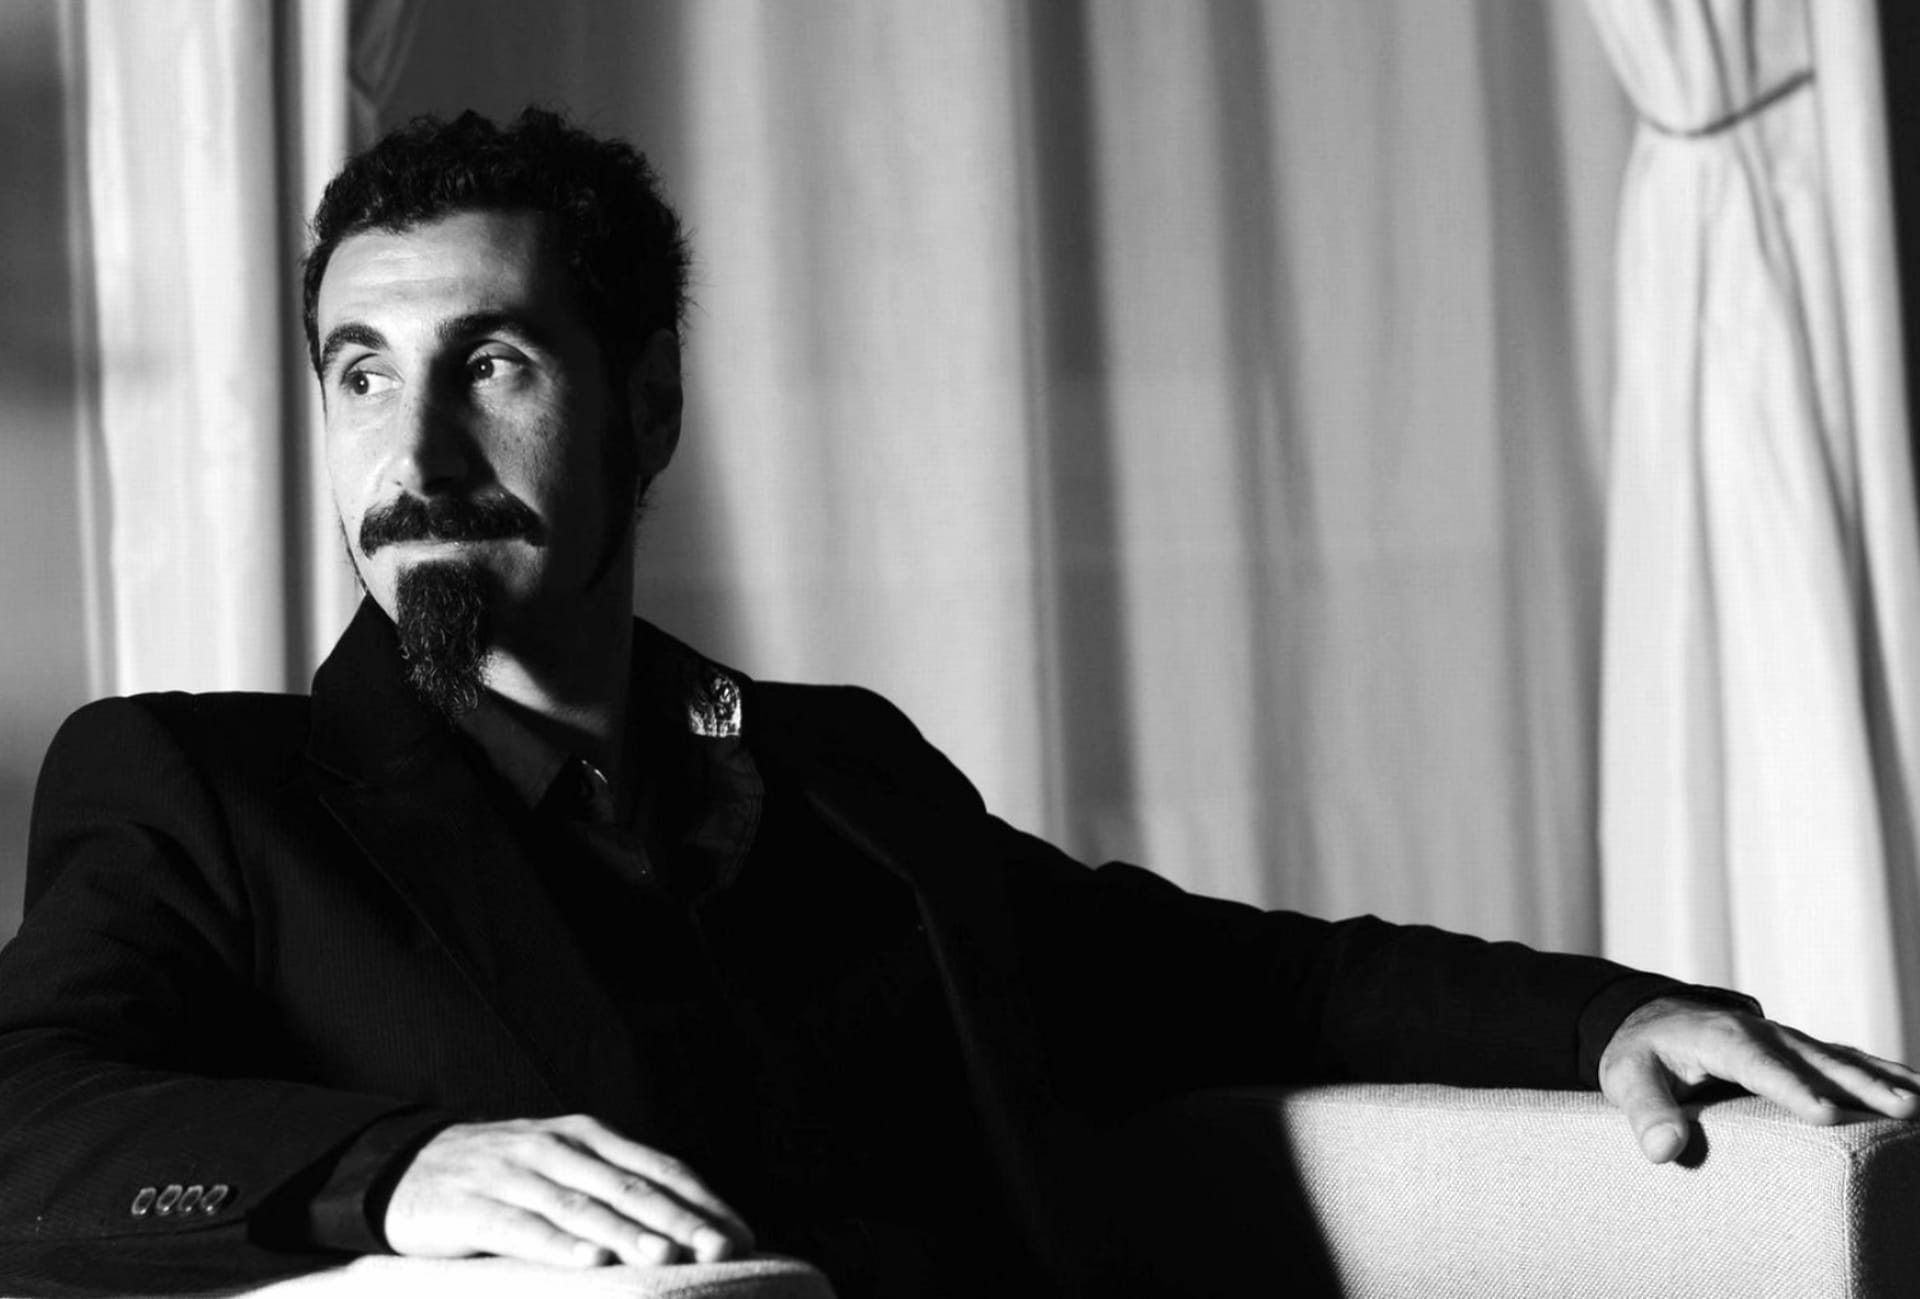 Serj Tankian at 1280 x 960 size wallpapers HD quality